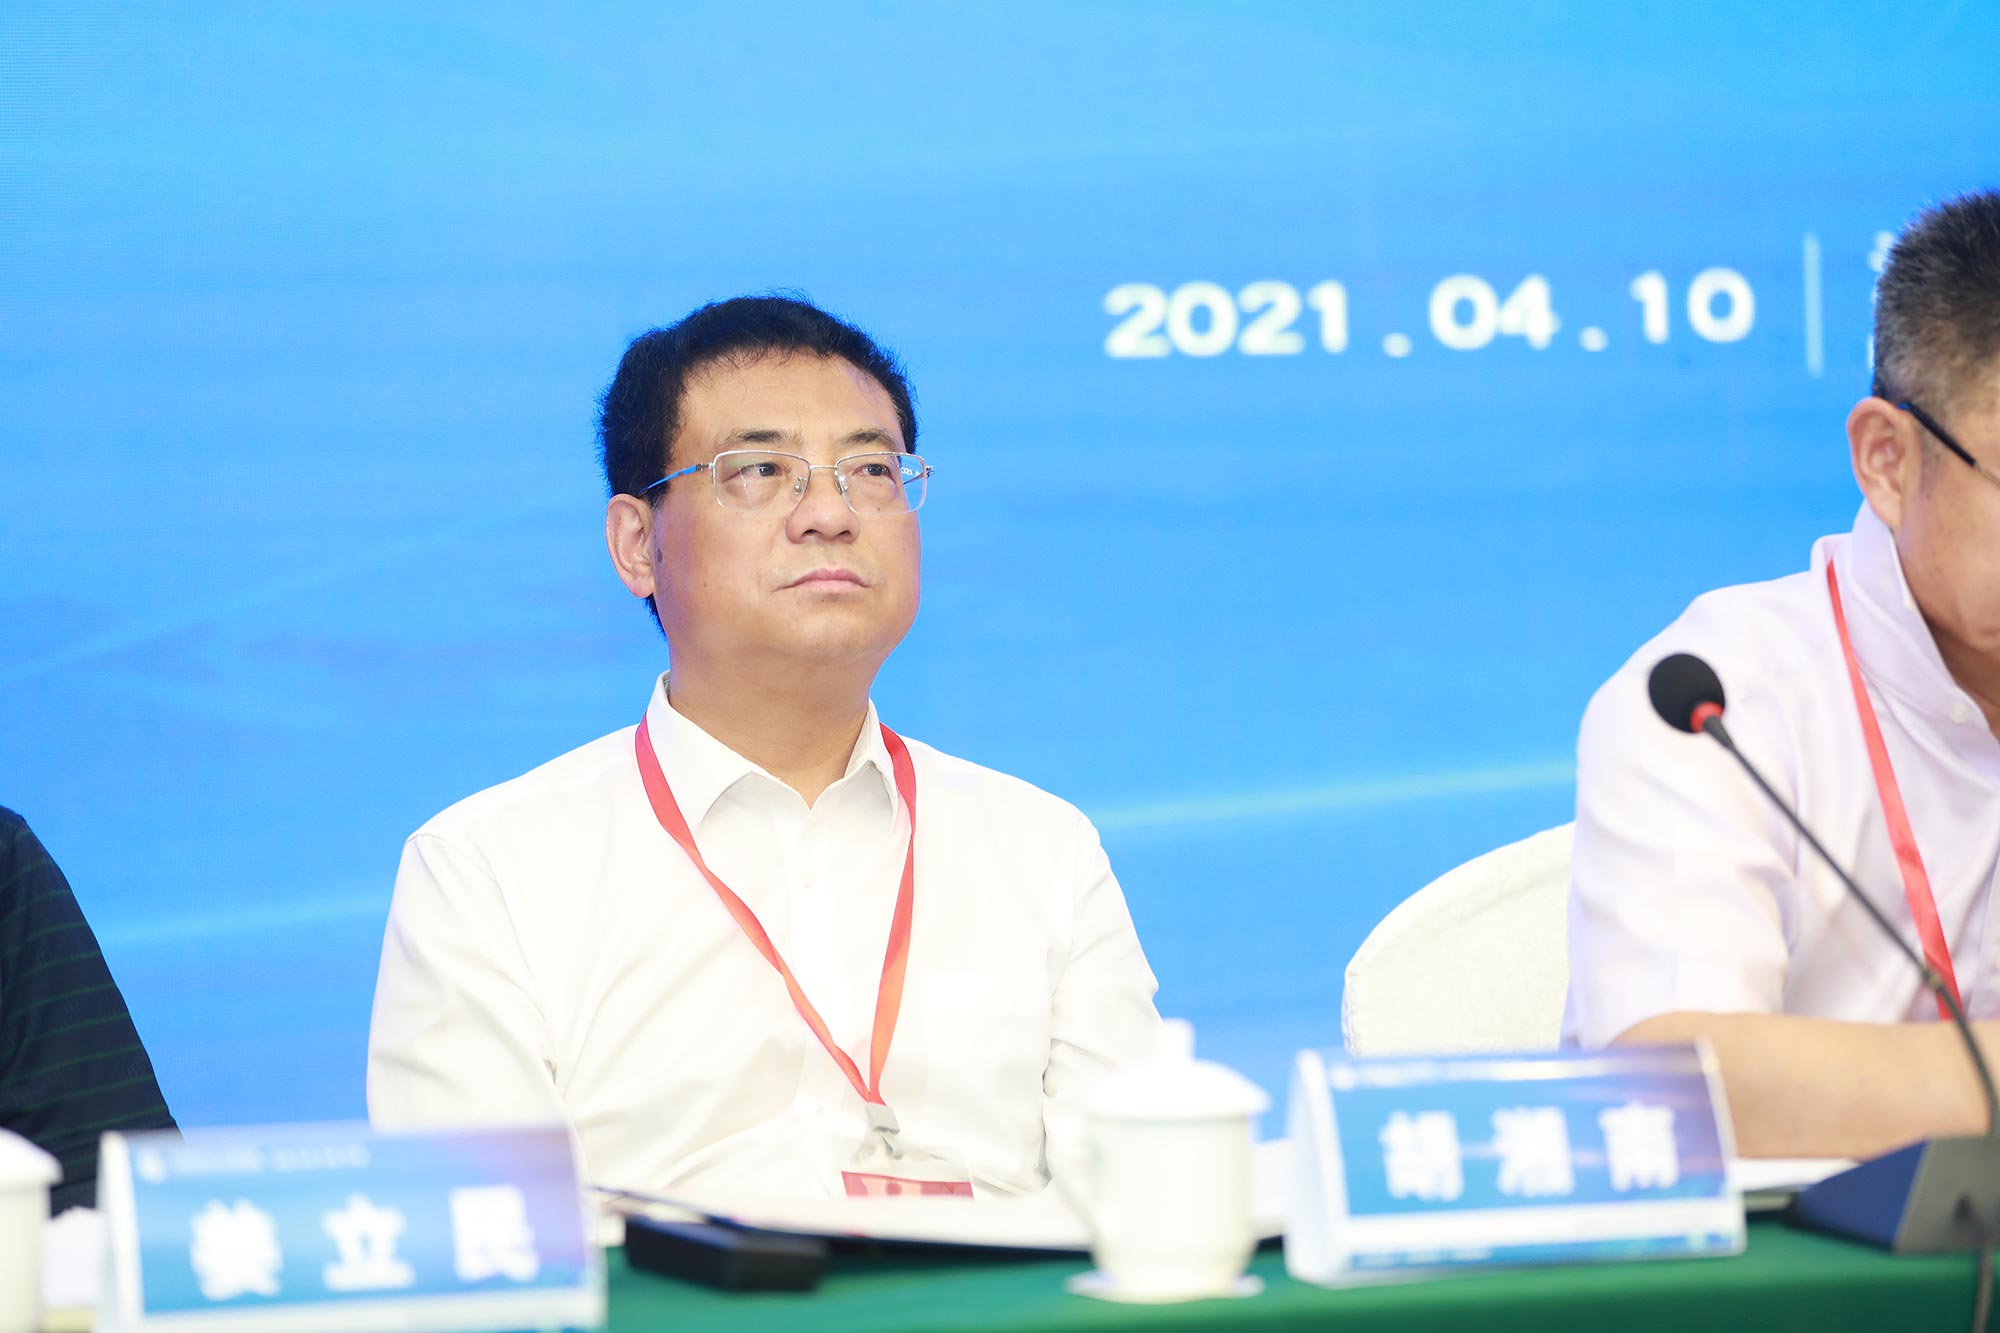 湖南湘潭教育局副局长、专家胡湘南在会上